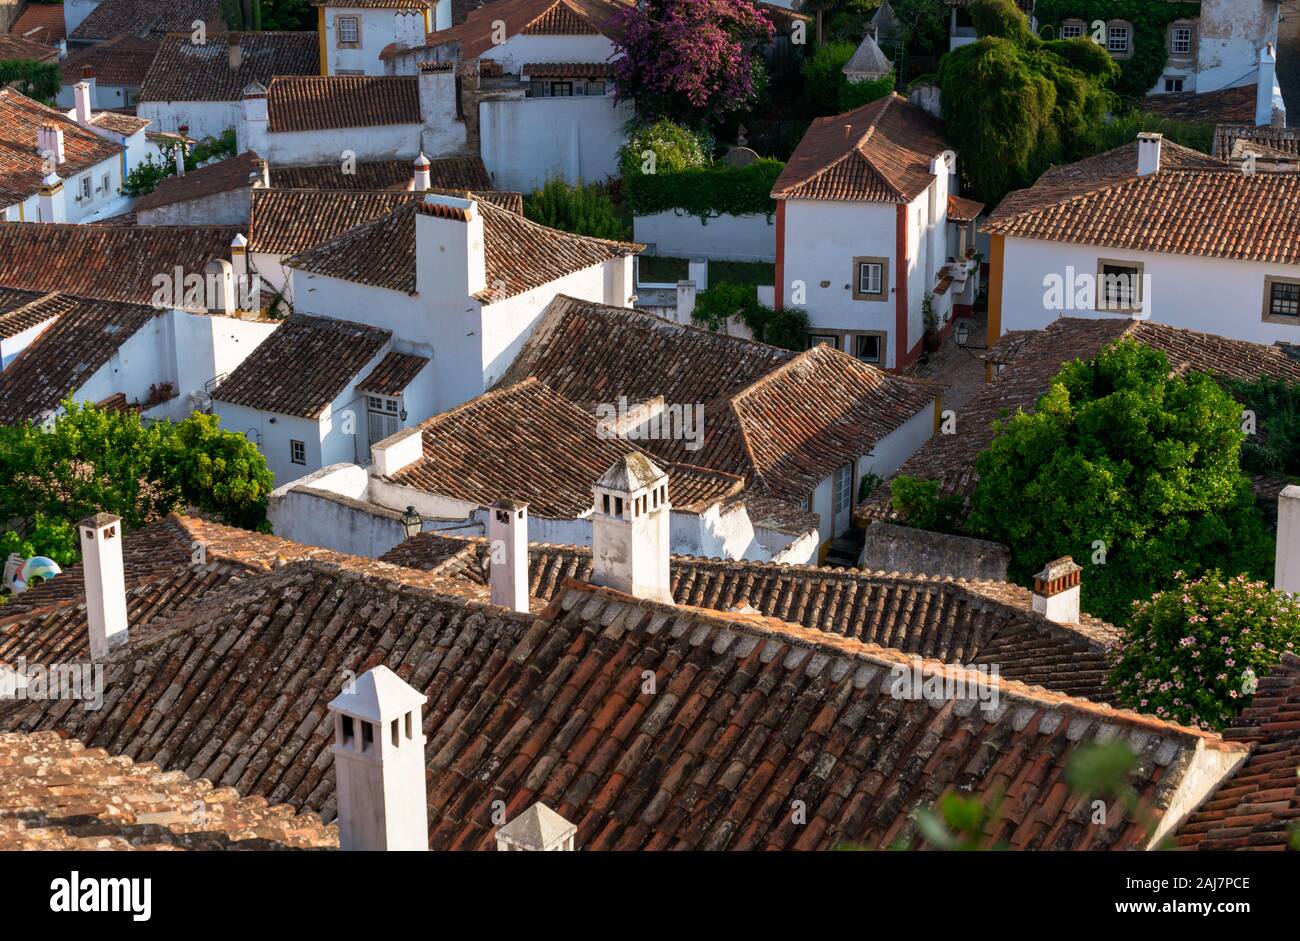 Blick über die Dächer und die alten Gassen und Häuser der portugiesischen Dorf Obidos. Foto: Tony Taylor Stockfoto